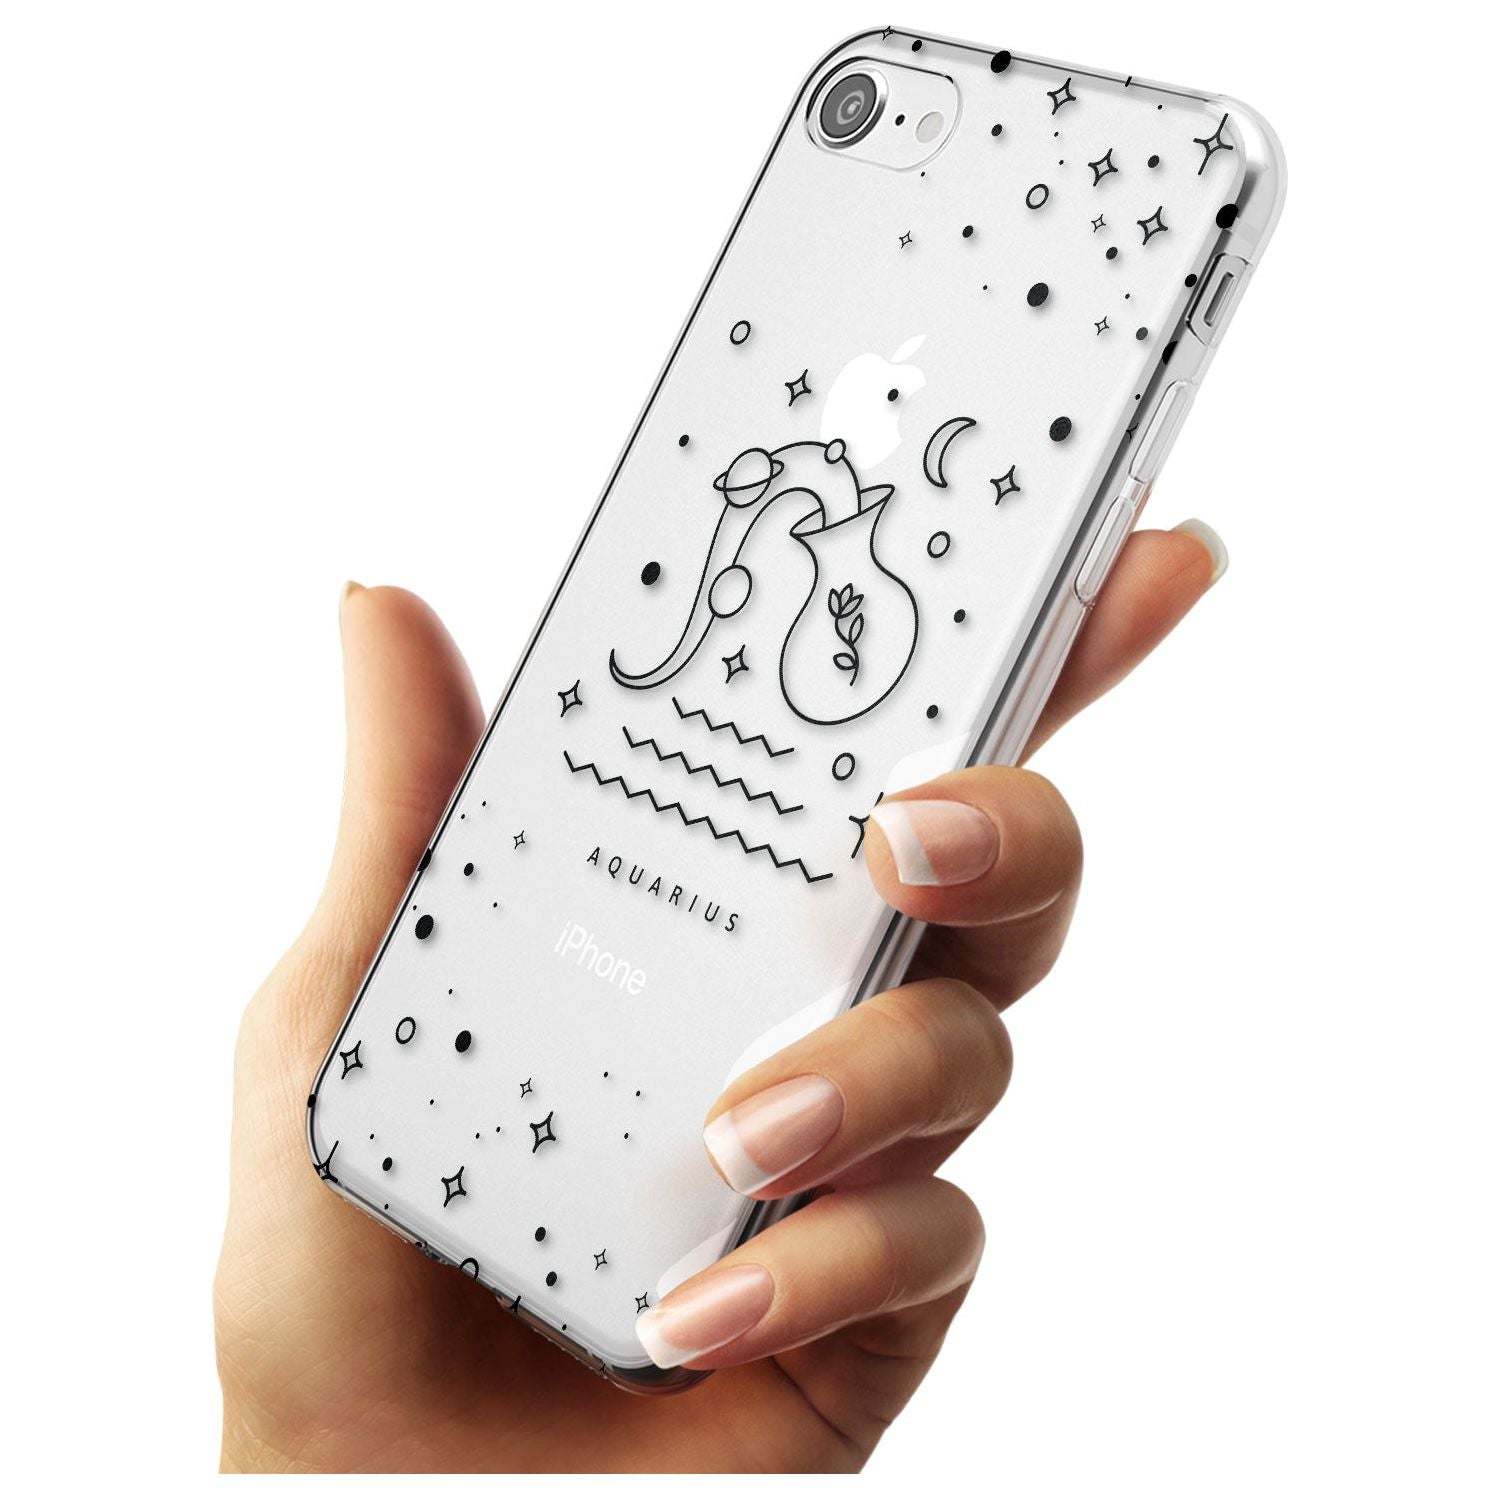 Aquarius Emblem - Transparent Design Slim TPU Phone Case for iPhone SE 8 7 Plus